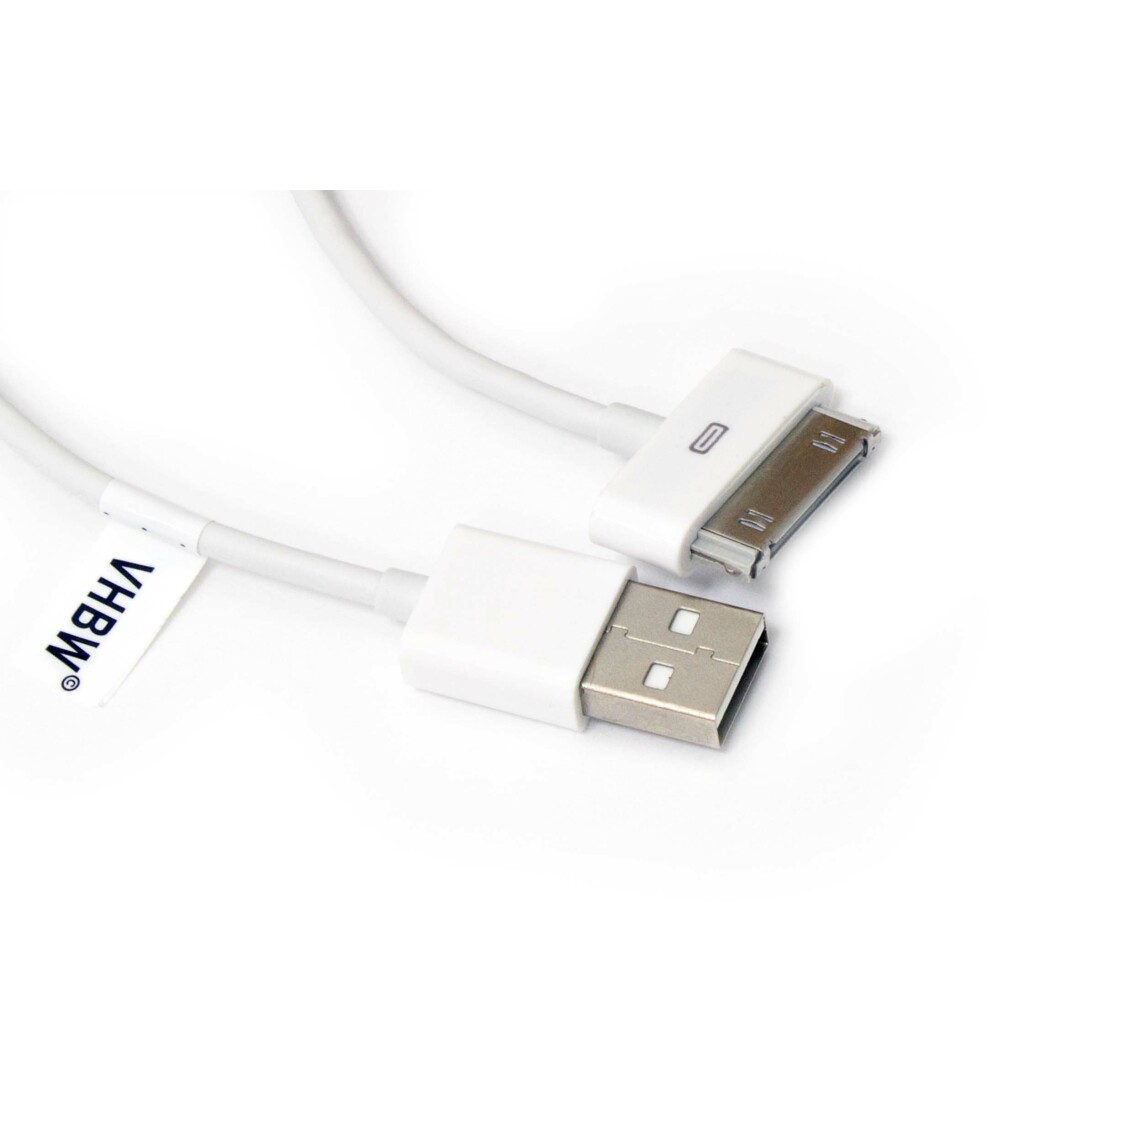 Vhbw - vhbw câble de données USB (type A sur iPod) compatible avec Apple iPod 3 Gen. - A1040, 4 Gen. (Photo) - A1099, 4 Gen. - A1059 lecteur MP3 - blanc - Alimentation modulaire